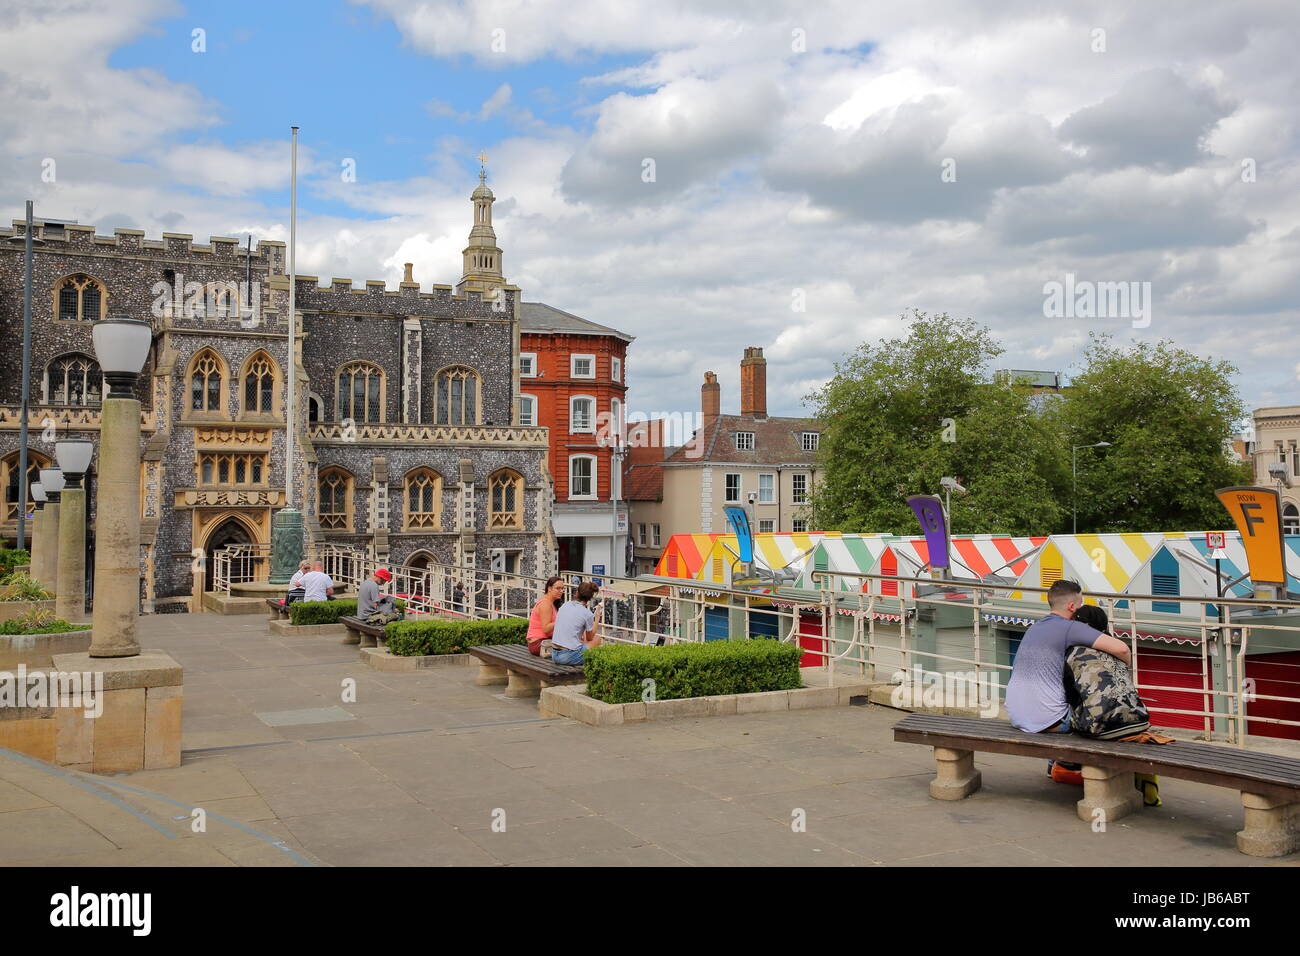 NORWICH, Regno Unito - 4 giugno 2017: persone rilassante presso il Memorial Gardens si affaccia su colorate bancarelle del mercato e con la Guildhall in background Foto Stock